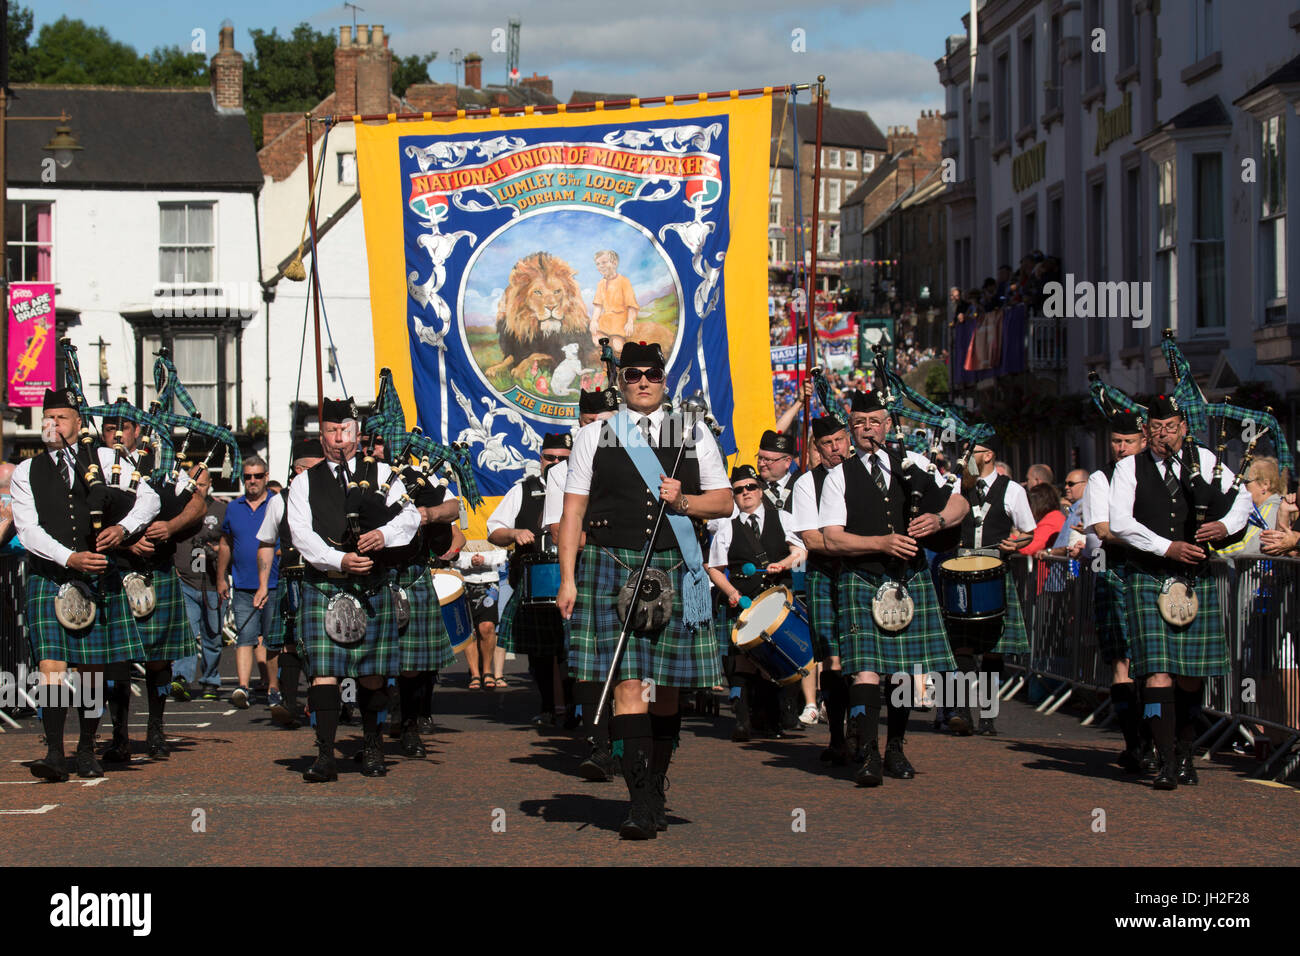 Une marche pipe band participe au défilé des bannières en Durham Miners' Gala à Durham City, en Angleterre. Banque D'Images